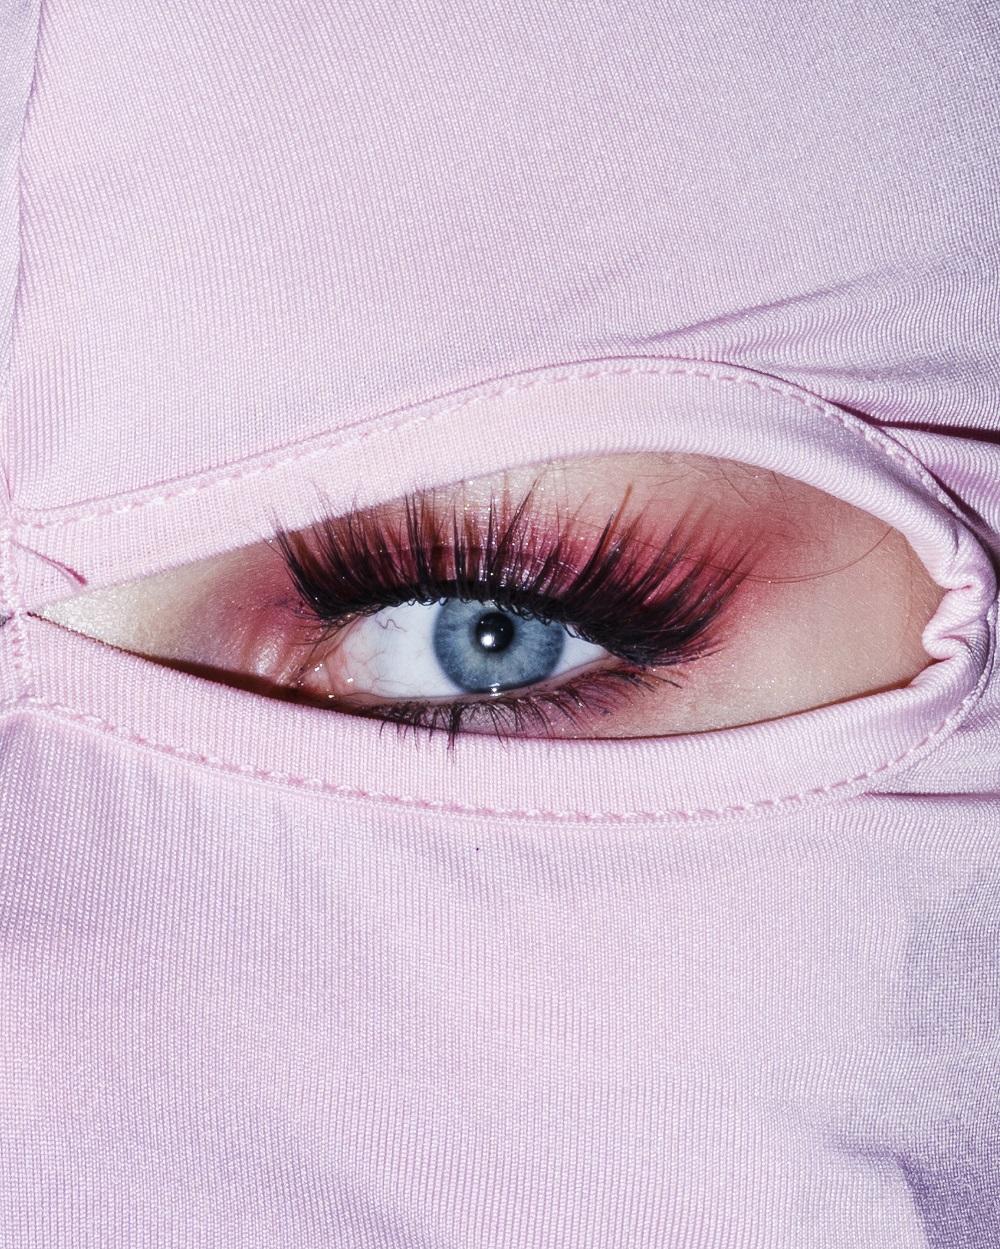 Fotografischer Bildausschnitt auf ein stark geschminktes Auge mit rosa Stoff, der das Gesicht um das Auge verdeckt